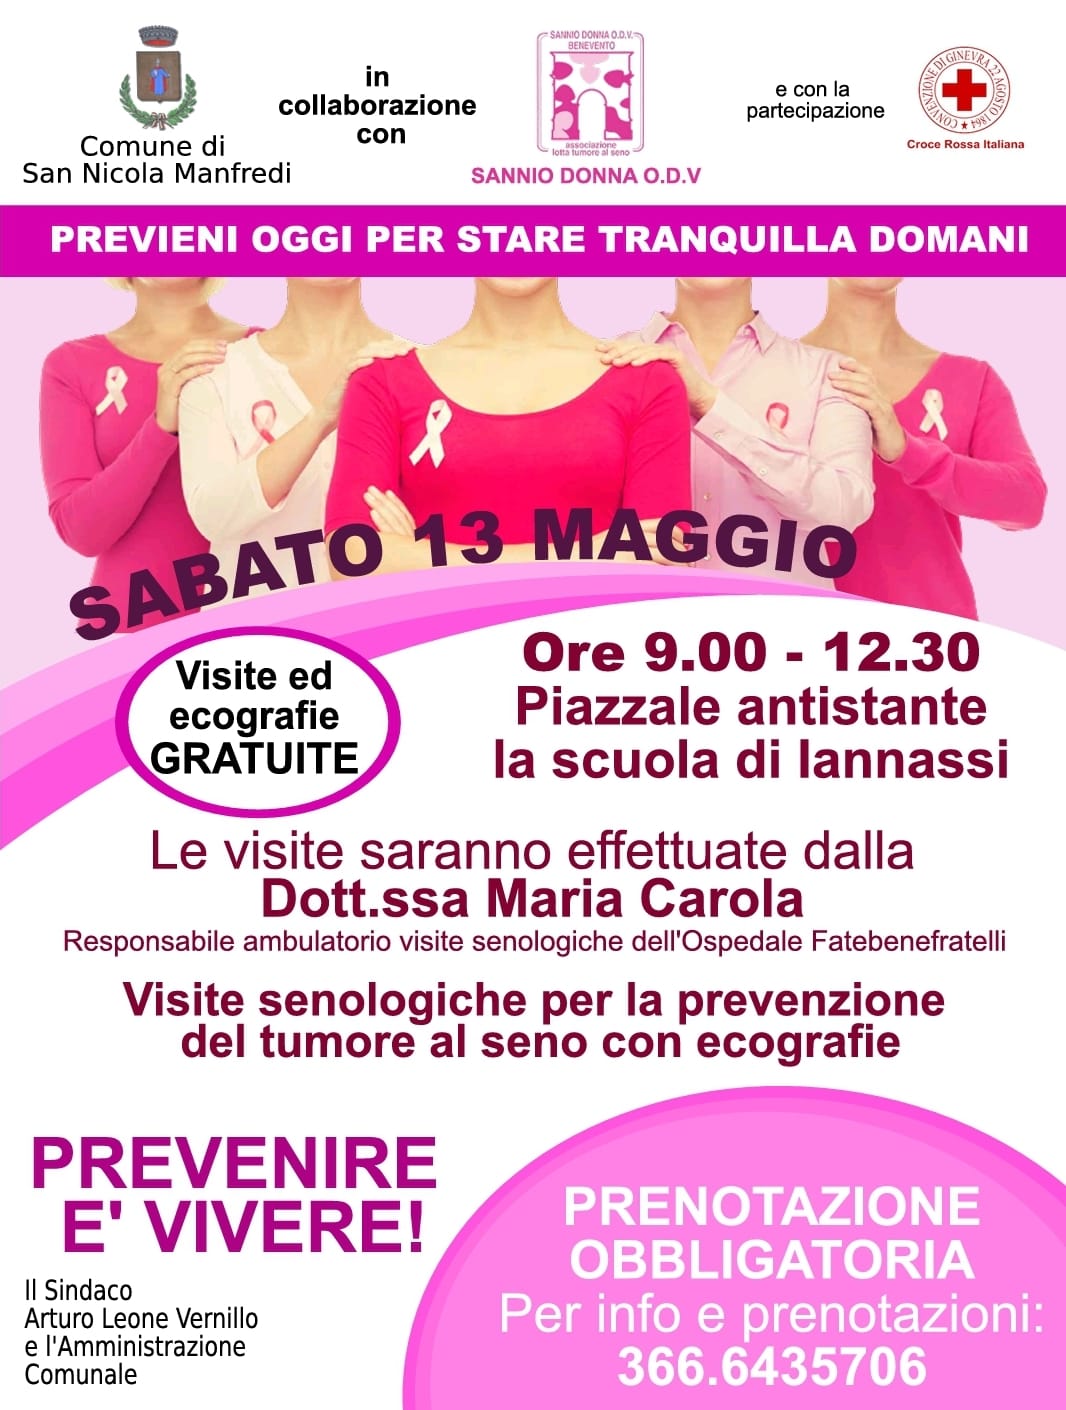 Ecografie al seno, appuntamento a San Nicola Manfredi con Sannio Donna ODV